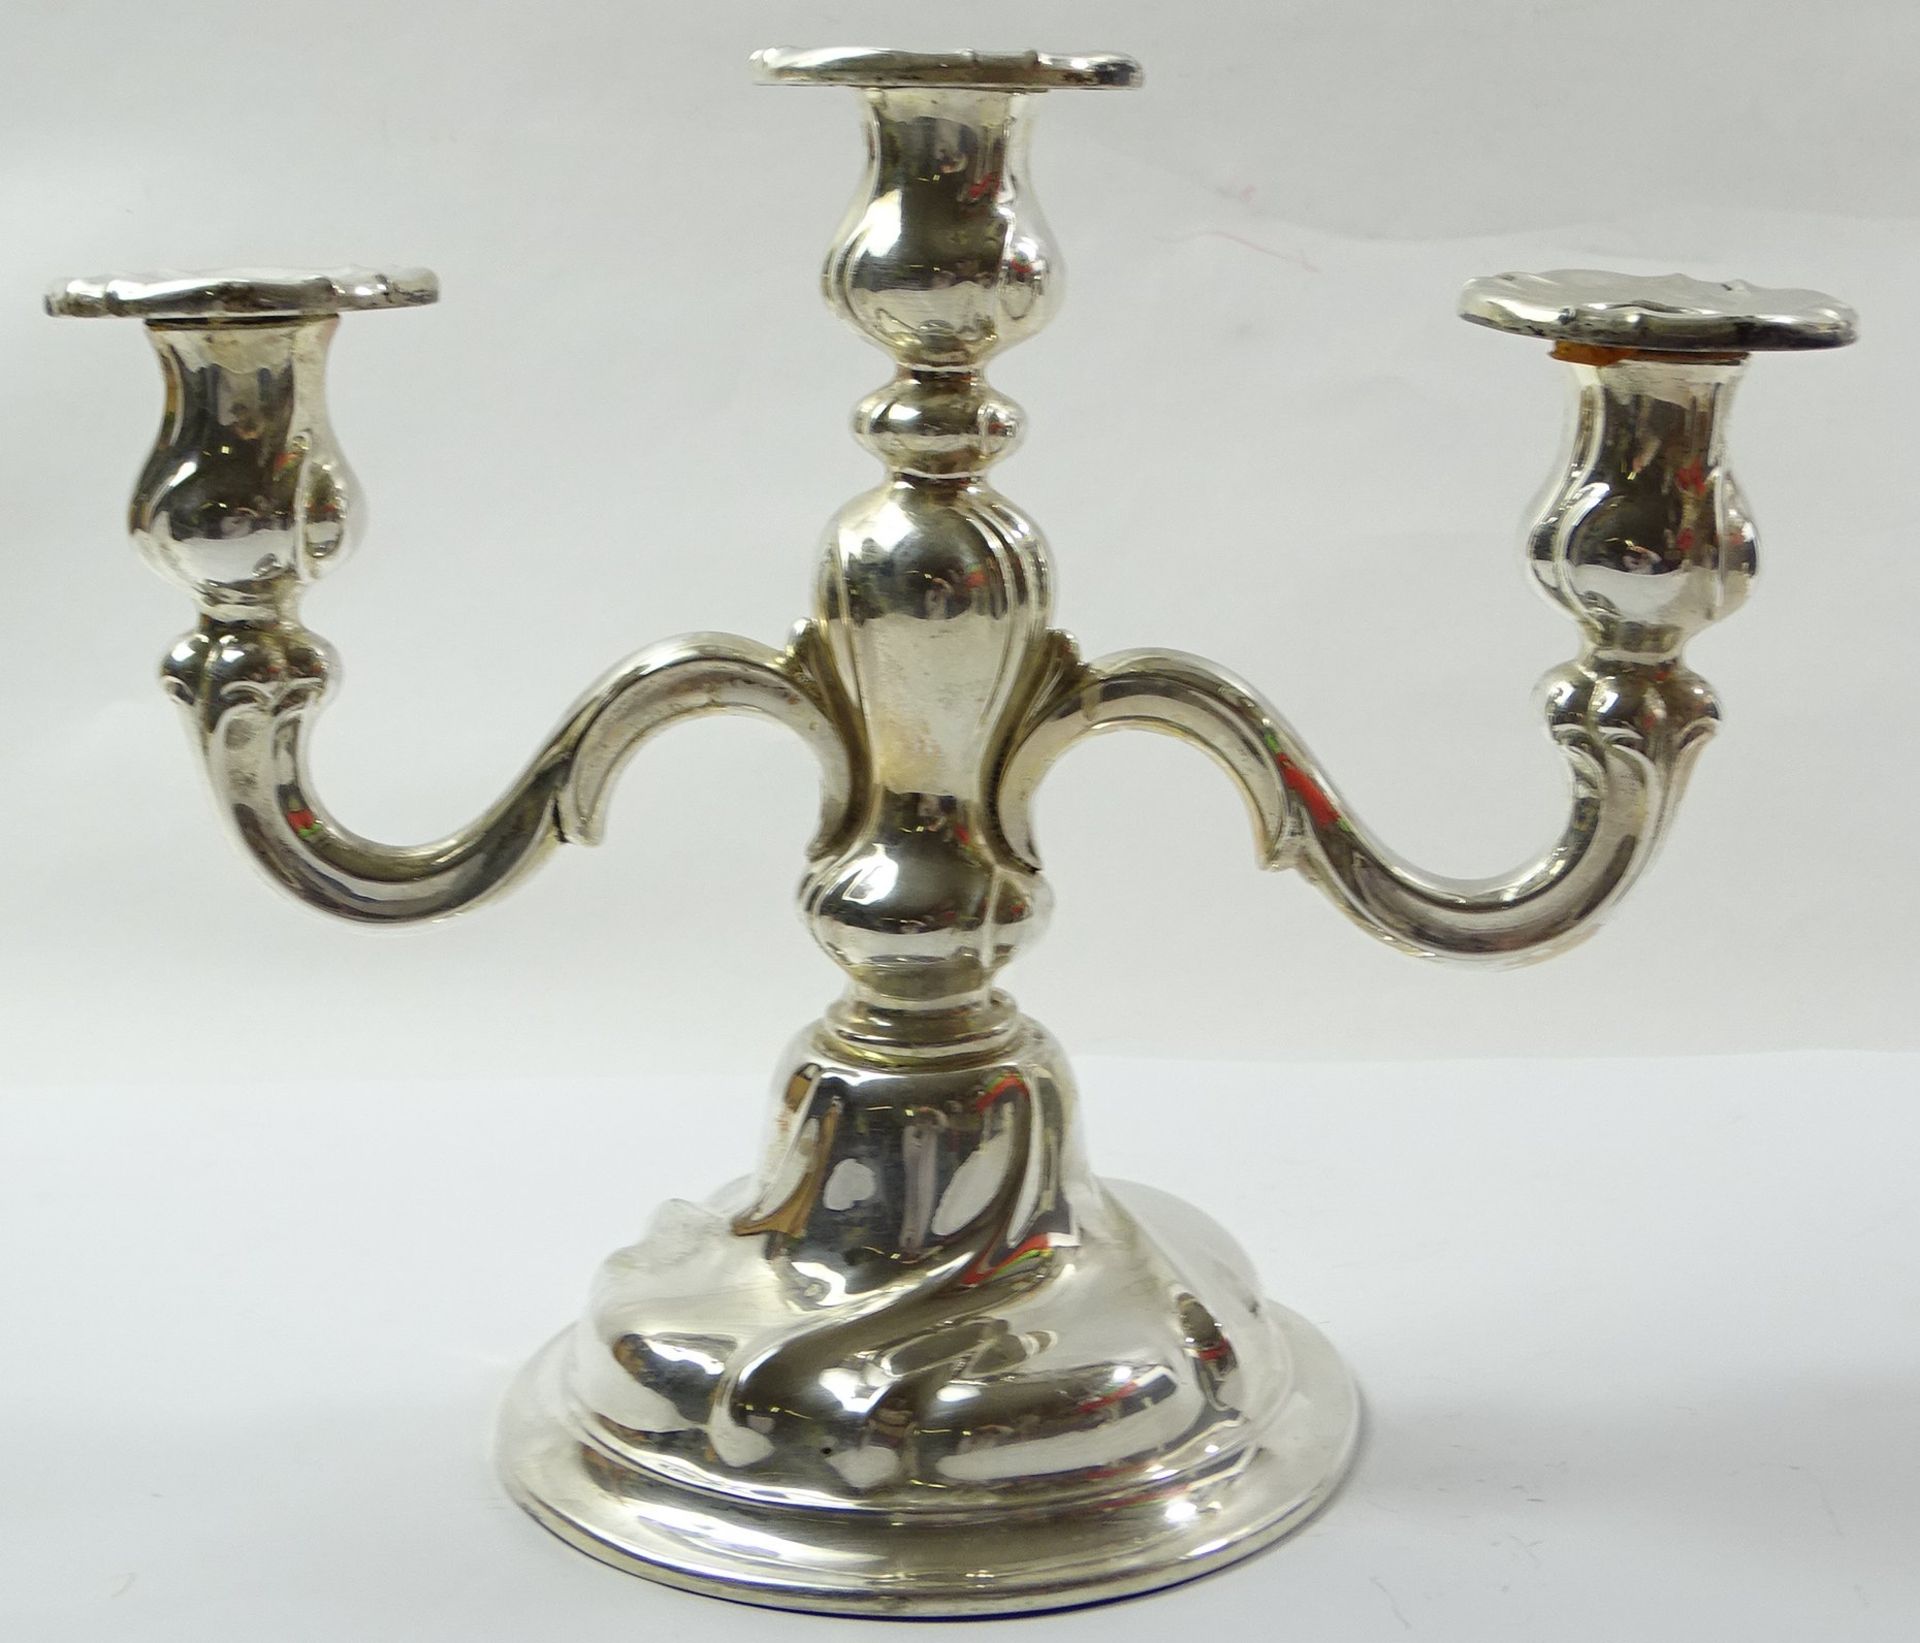 3-armiger Kerzenleuchter, 835er-Silber, H. 21 cm, Ø Stand: 13,5 cm, mit Altersspuren, reinigungsbed